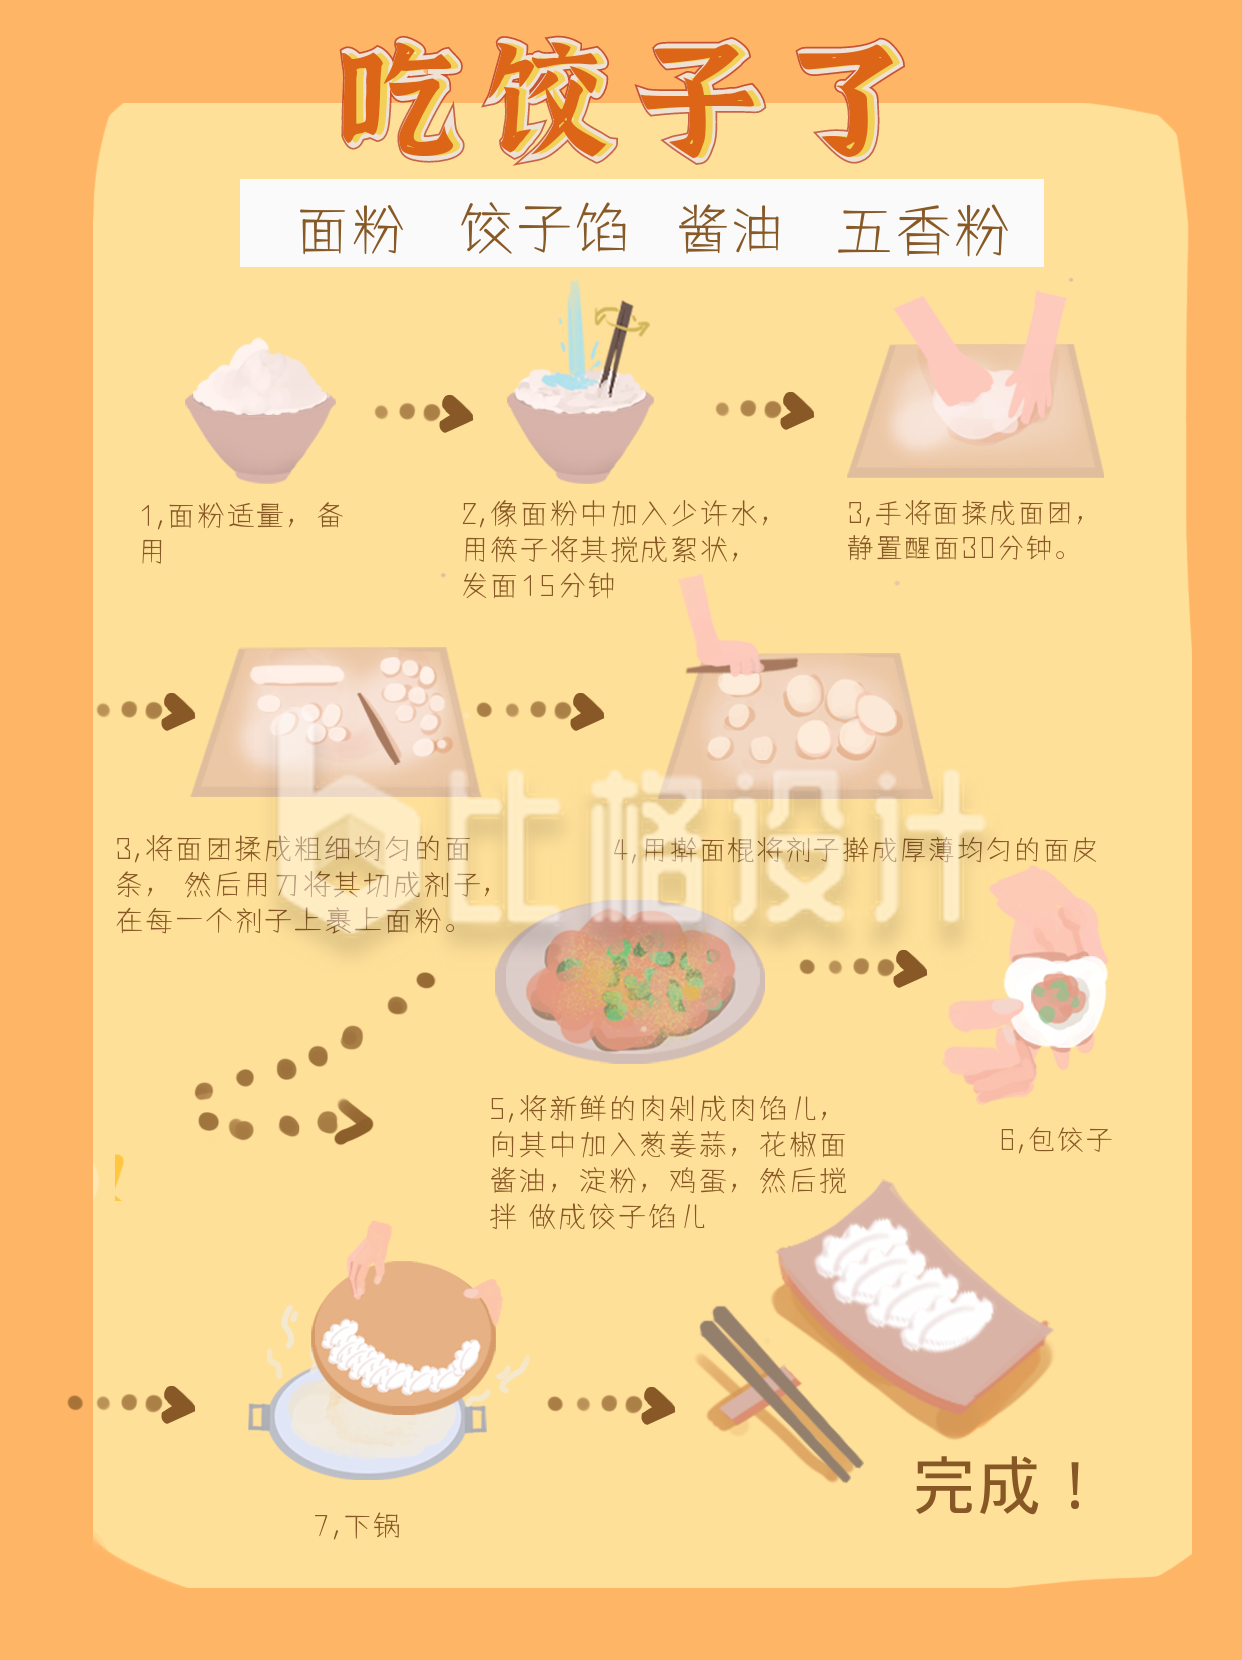 吃饺子做饺子步骤图详解小红书封面